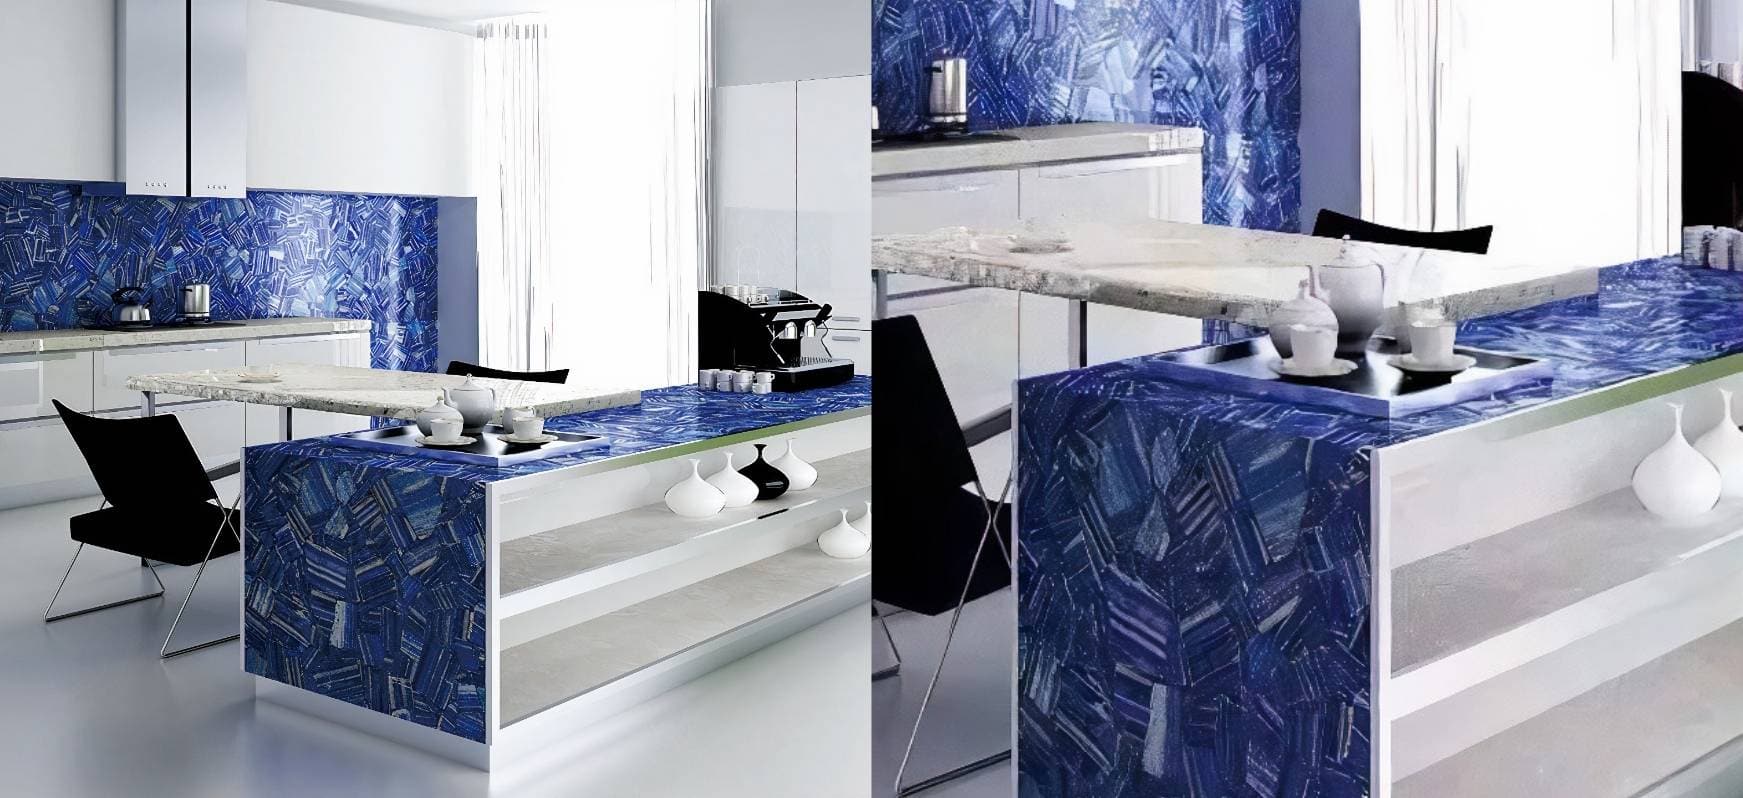 Lapz Lazuli Precious Stone Countertops Blue Countertops